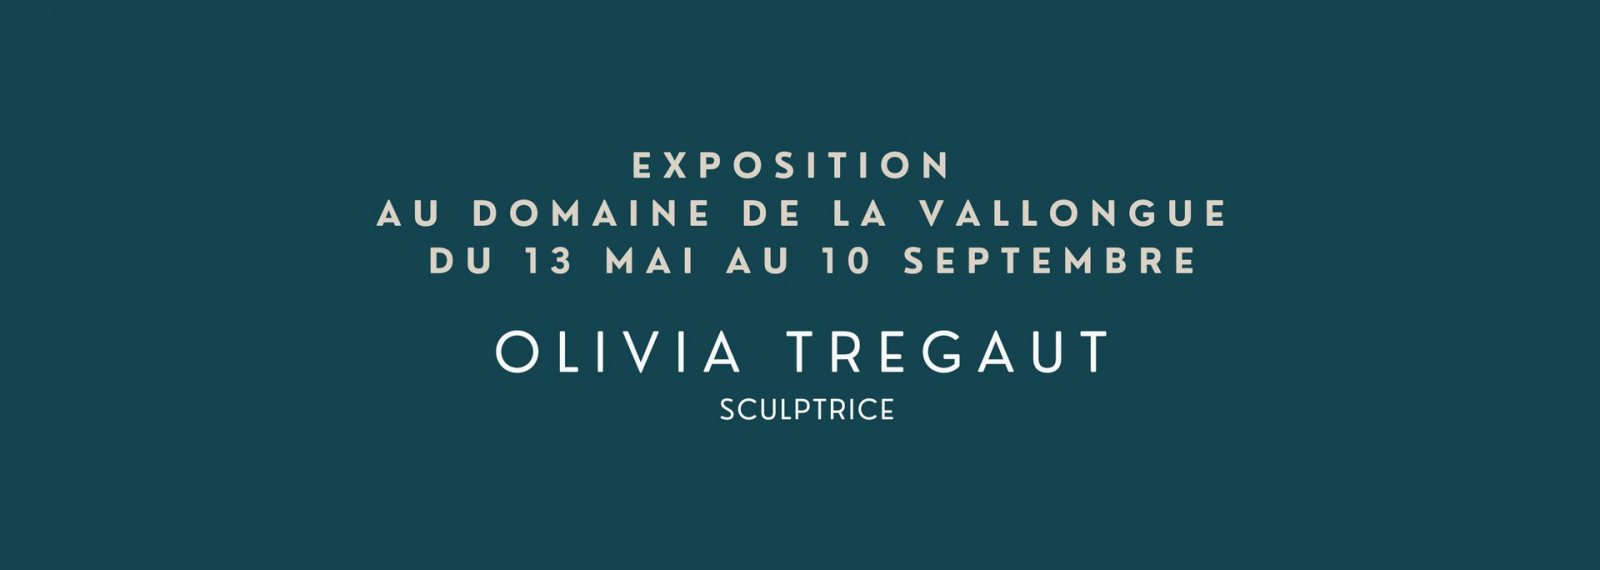 Exposition Olivia Tregaut au Domaine de la Vallongue Eygalières